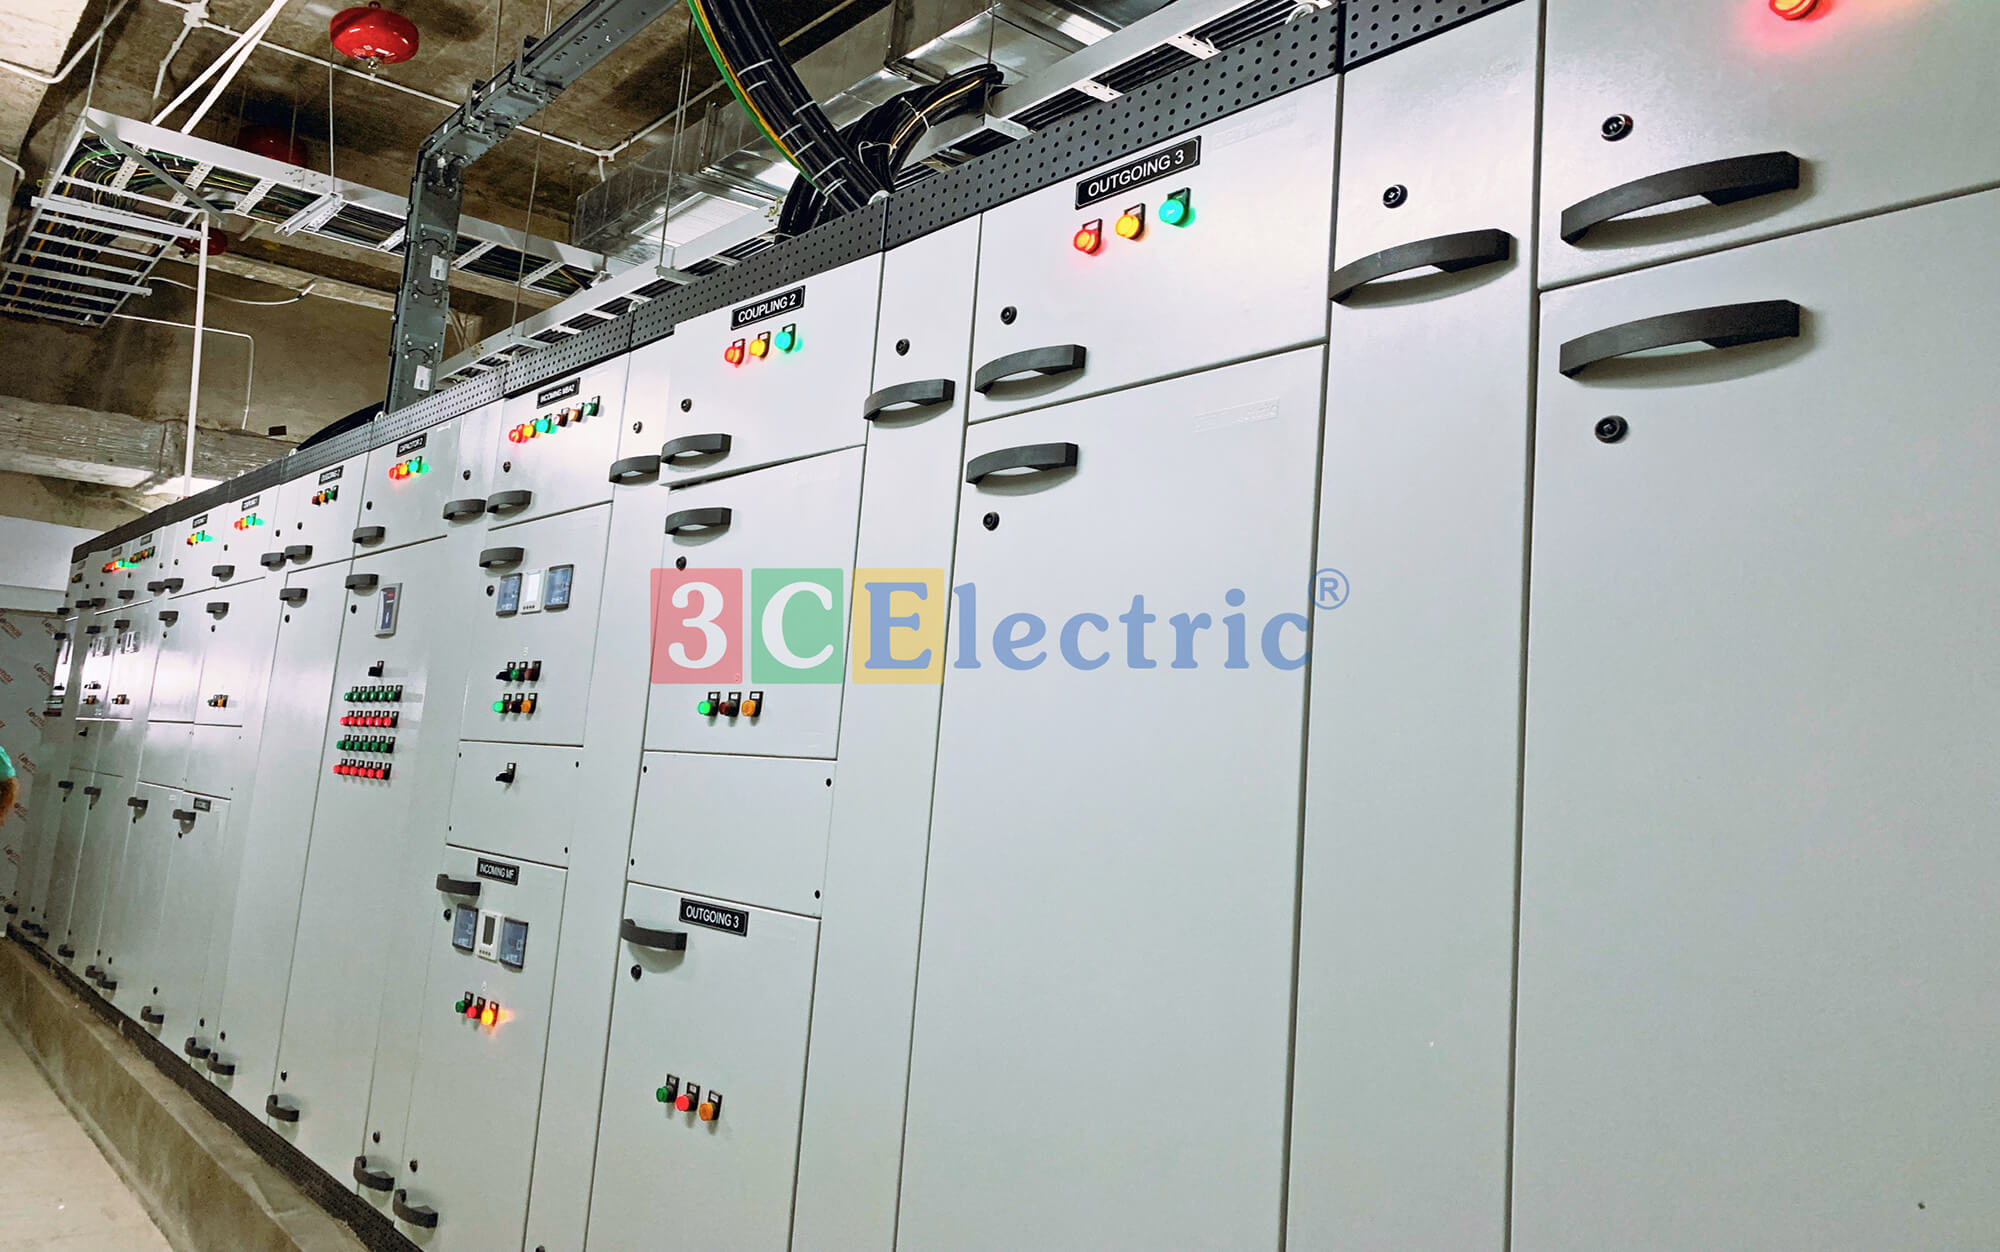 Tủ điện tổng MSB 3CElectric lắp đặt tại công trình